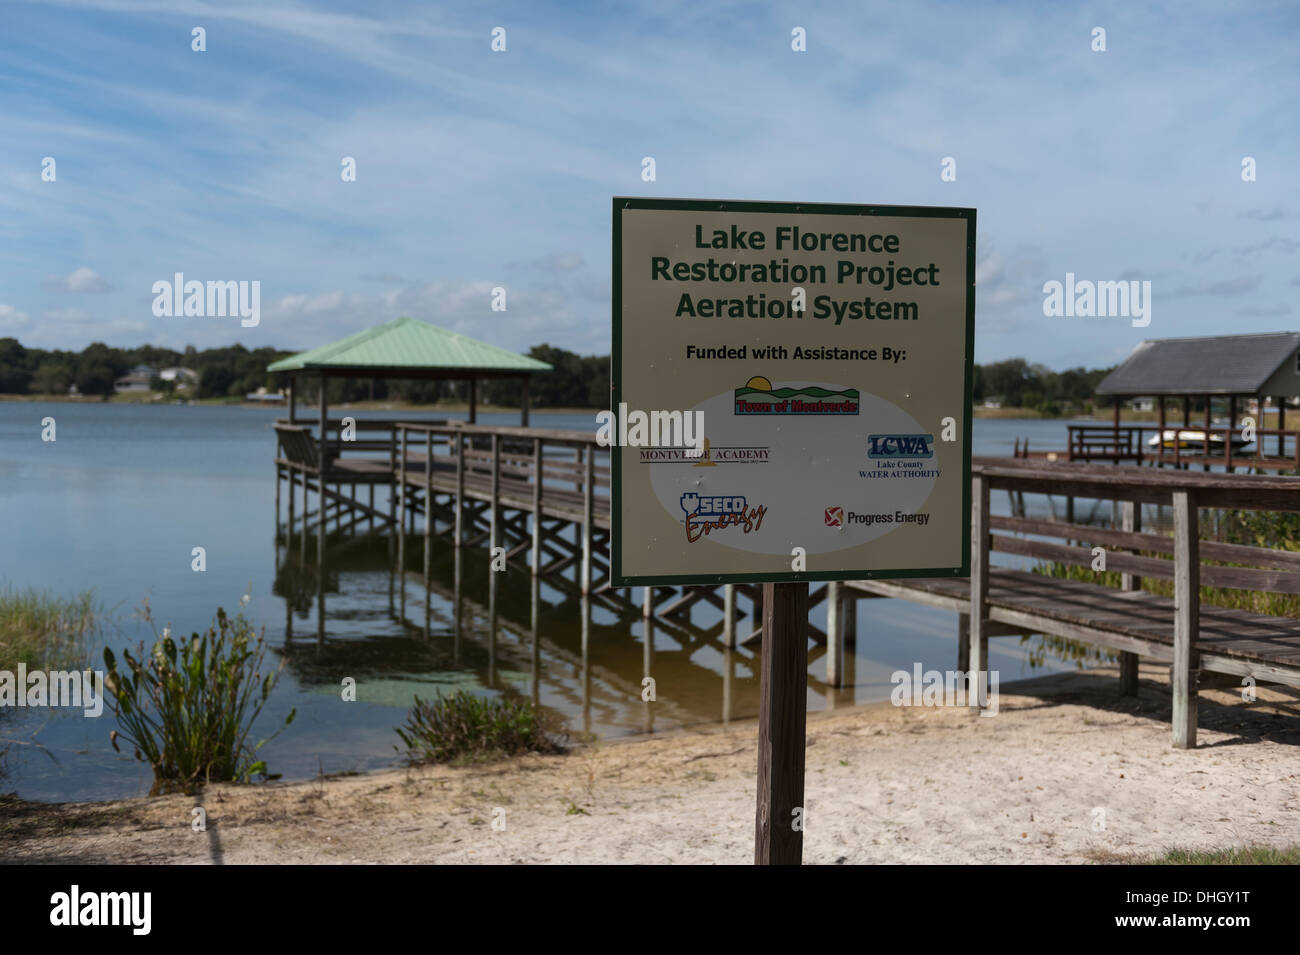 Il lago di Firenze in Montverde, Florida aerazione del progetto di restauro. Foto Stock